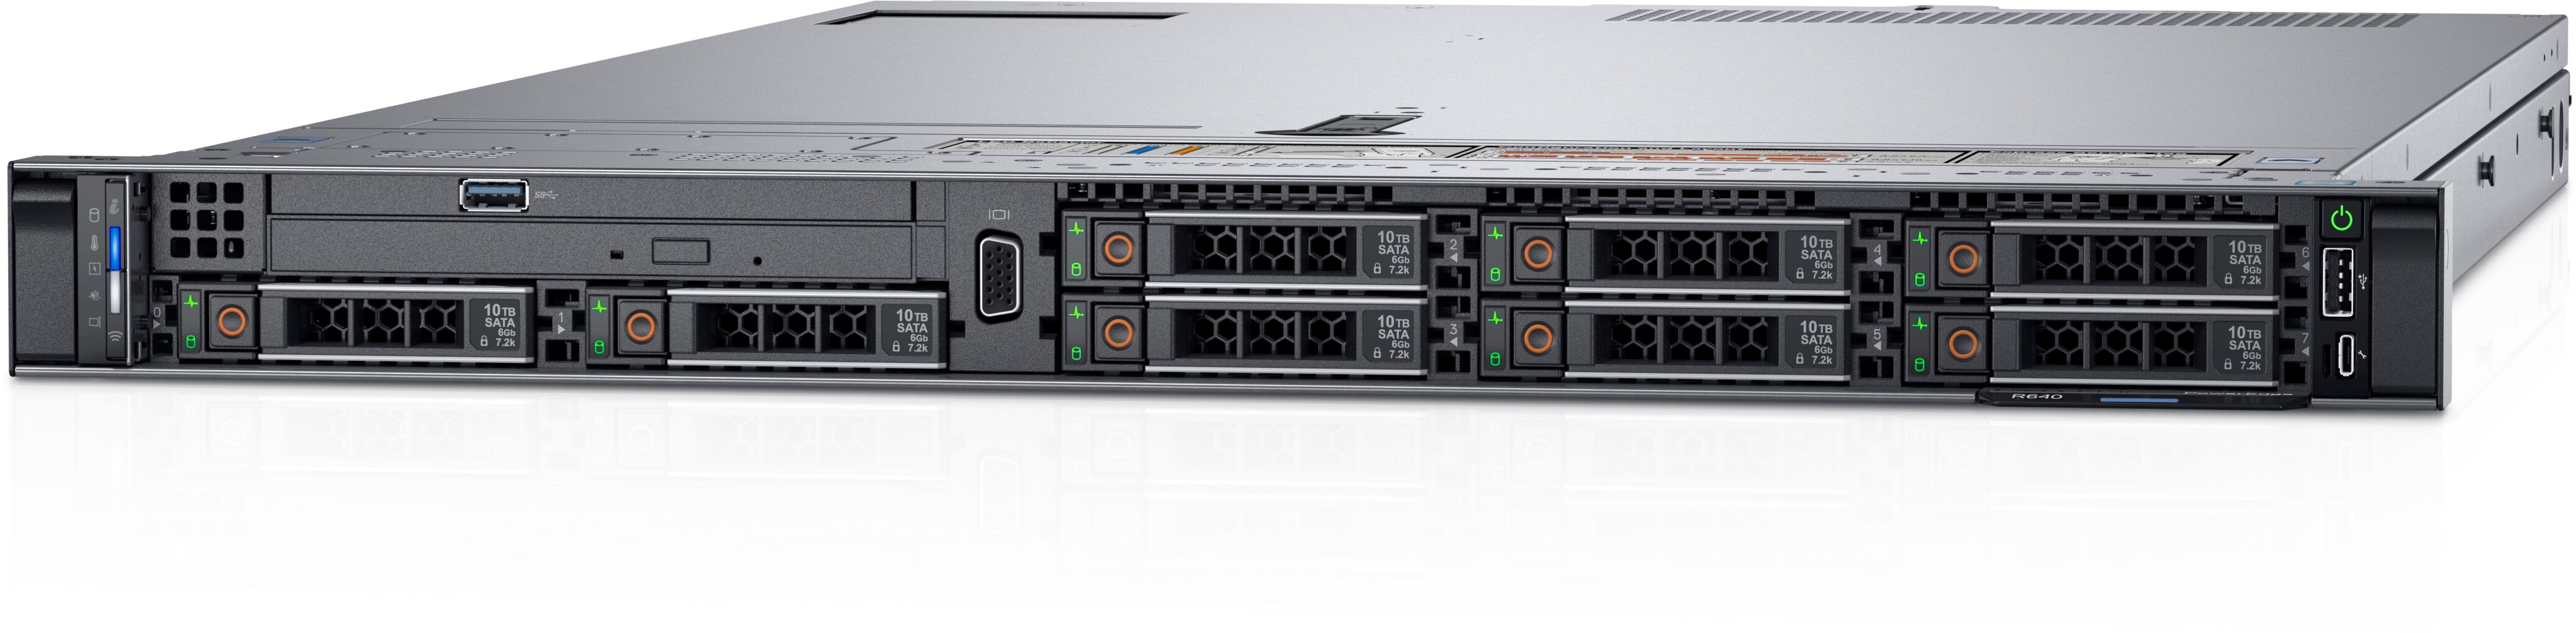 PowerEdge R640 Rack Server : Servers | Dell Australia